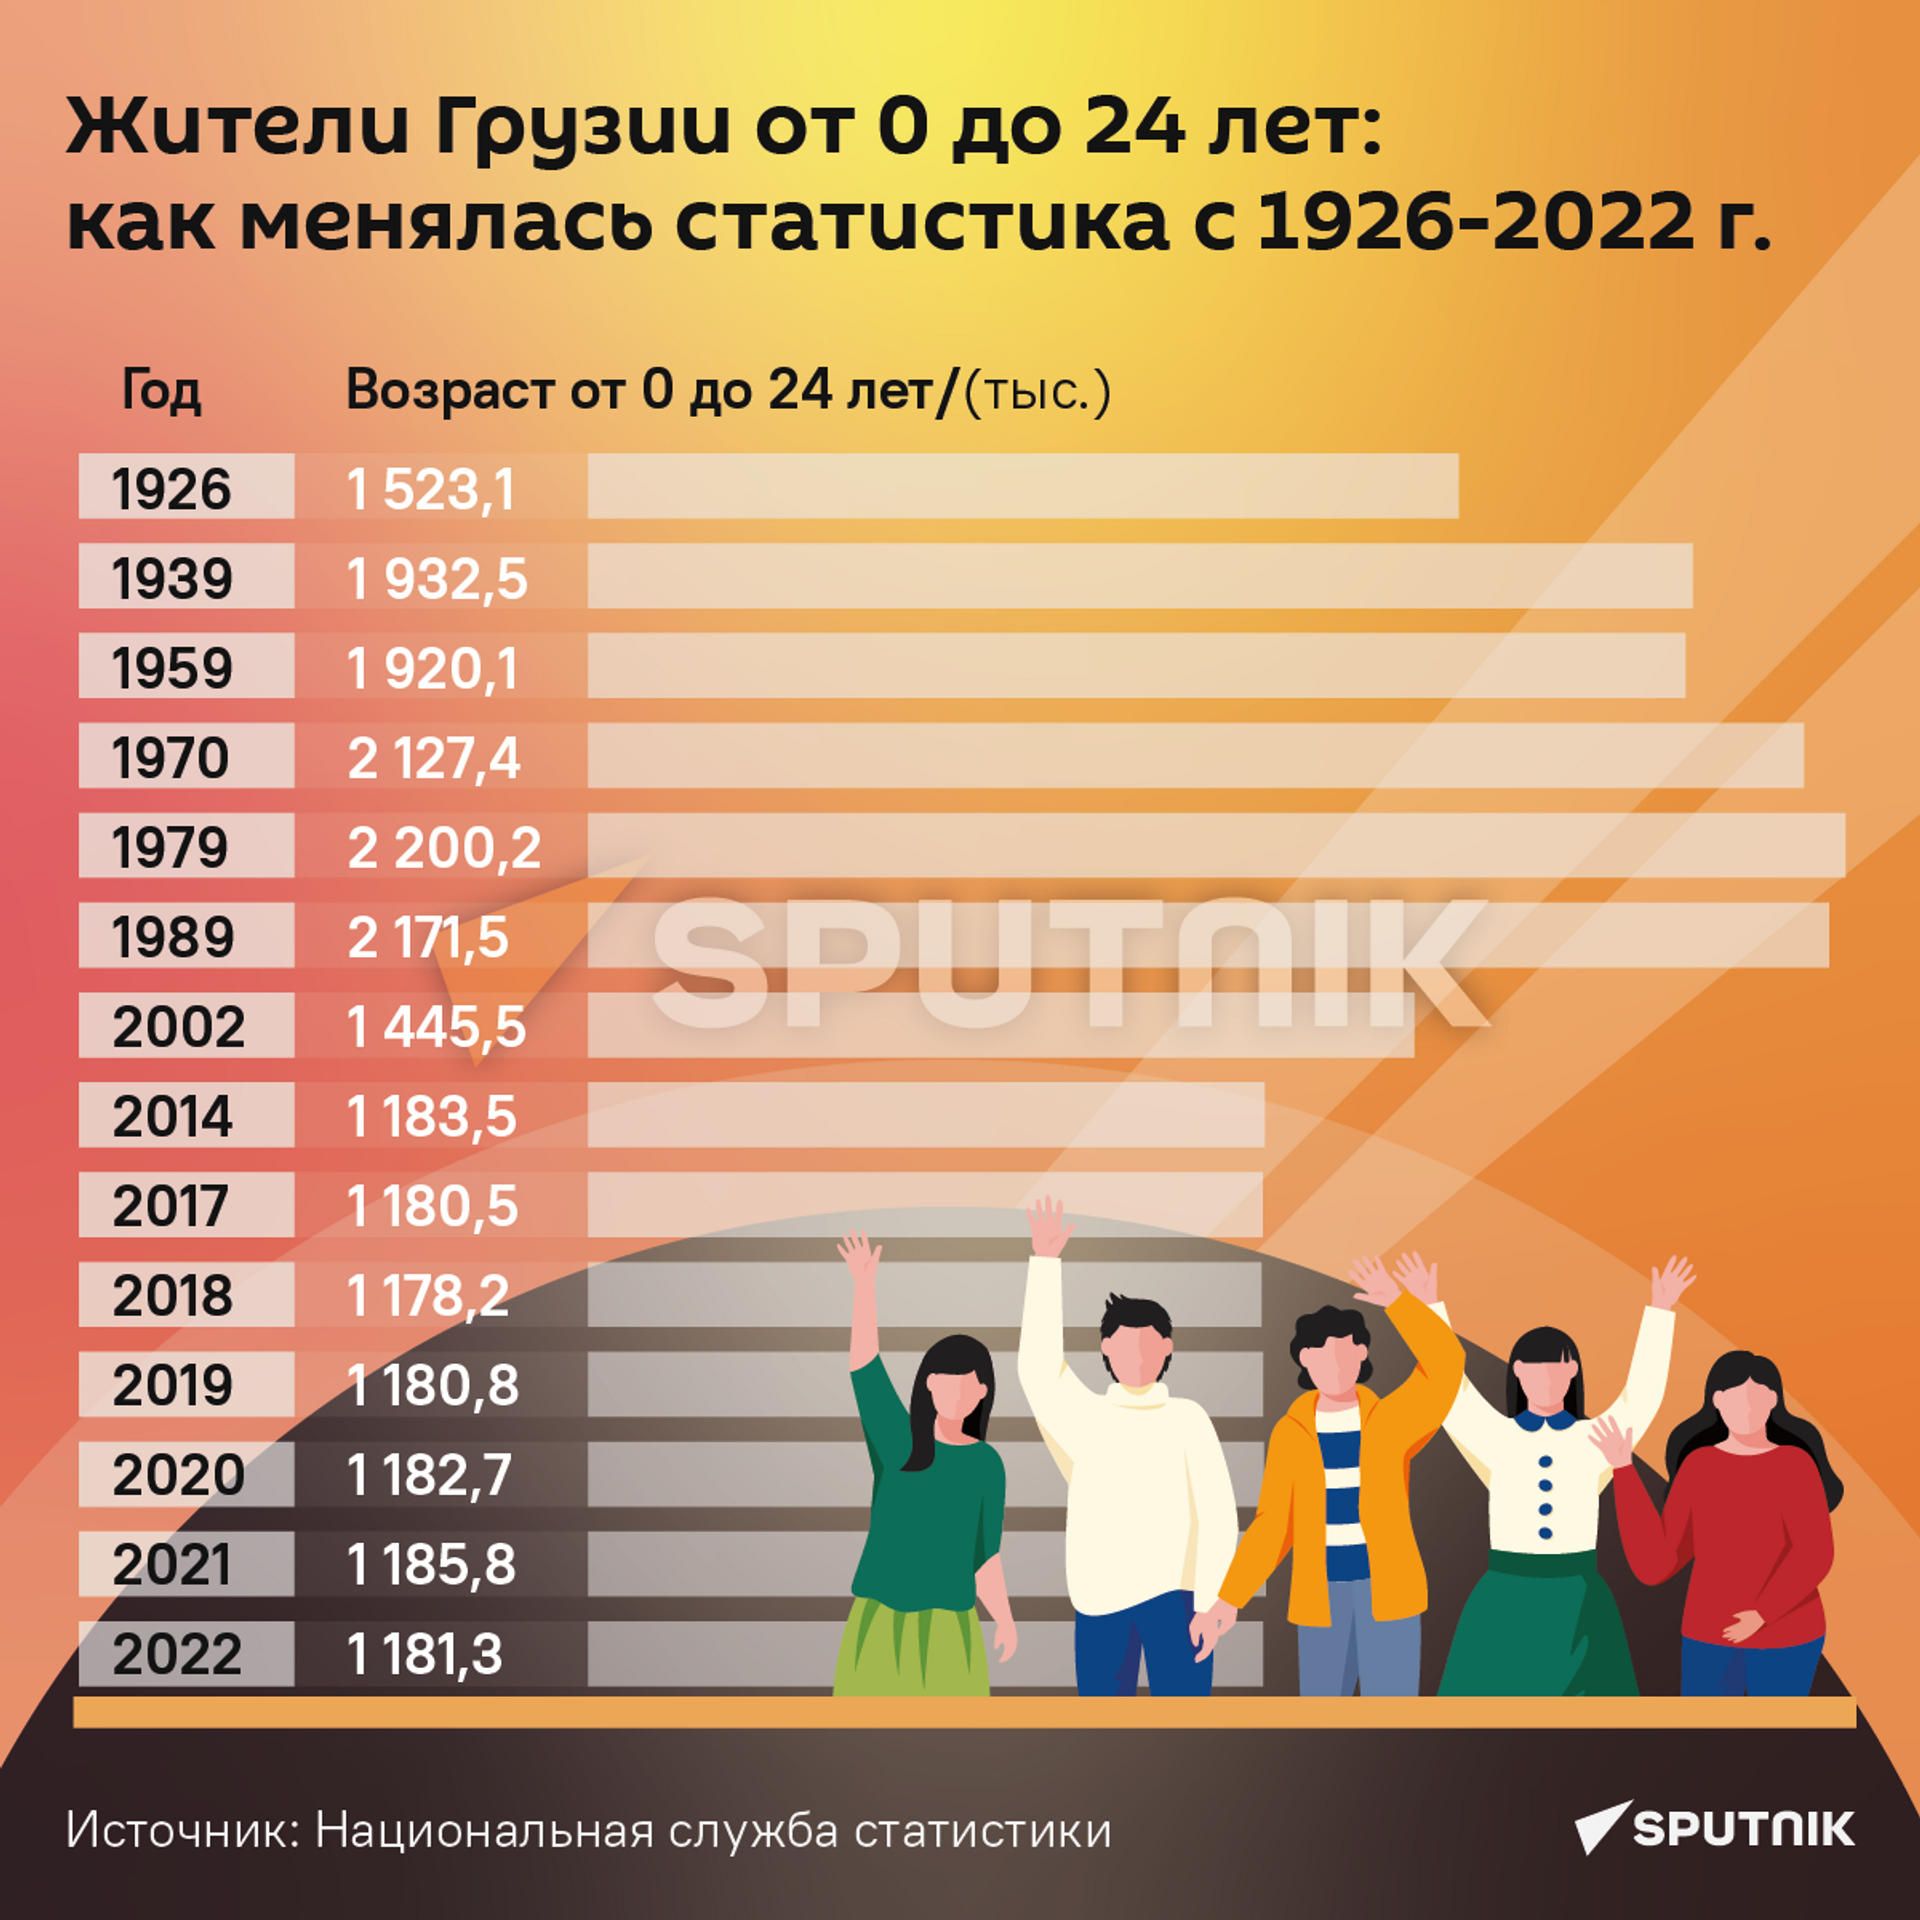 Как менялось количество детей и подростков в Грузии с 1926 по 2022 гг. - Sputnik Грузия, 1920, 27.03.2023